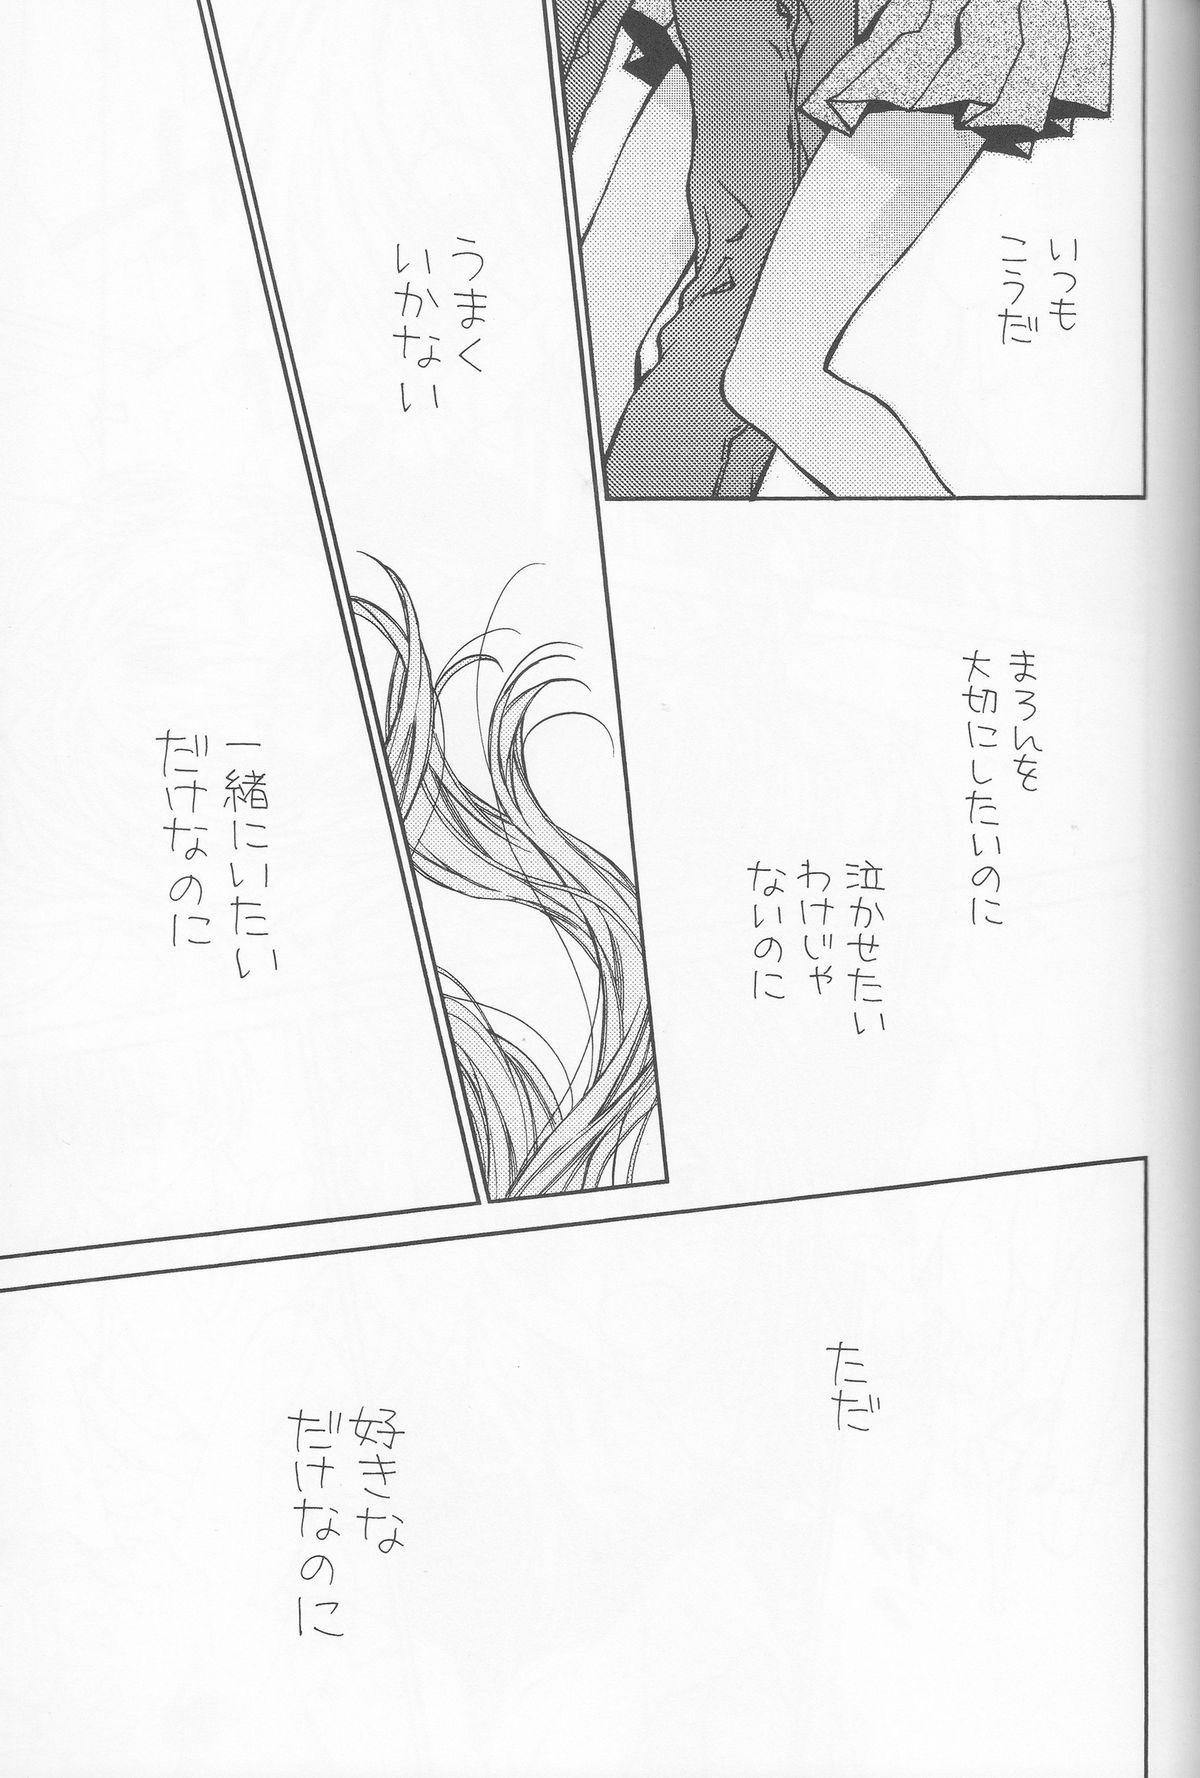 Kissing Bara Bara Toeru - Kamikaze kaitou jeanne Punk - Page 13